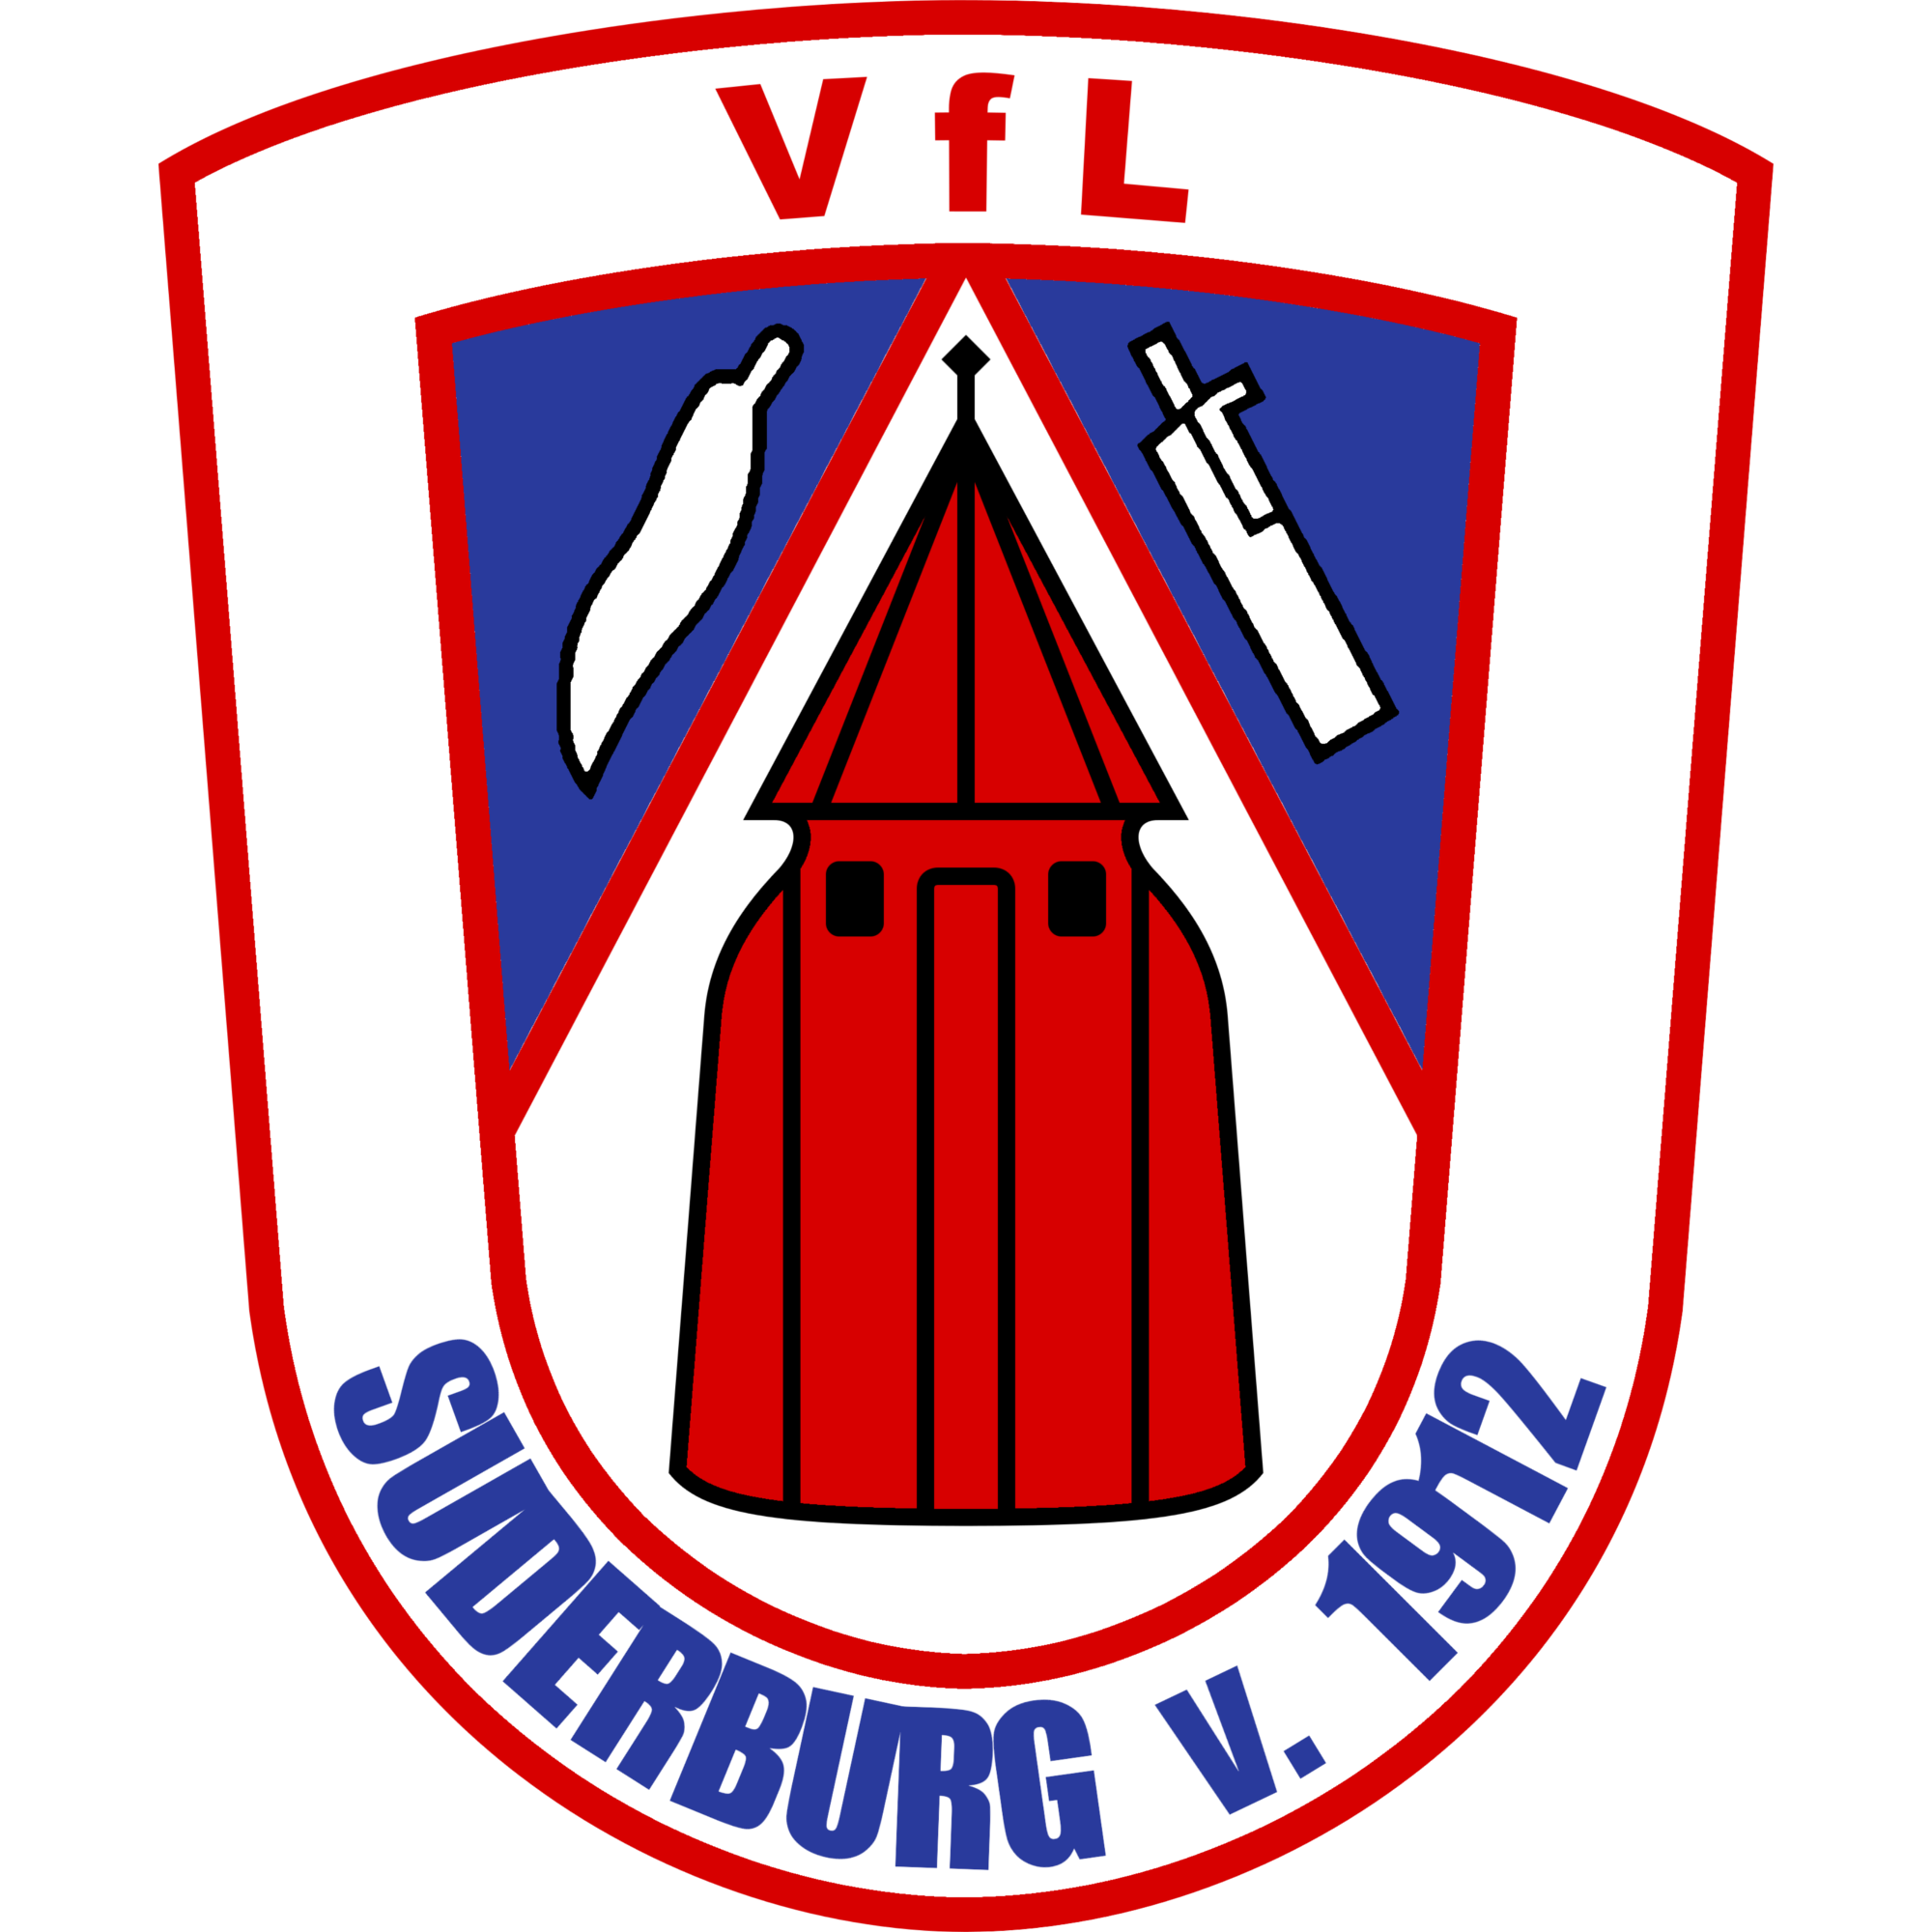 VFL苏德堡